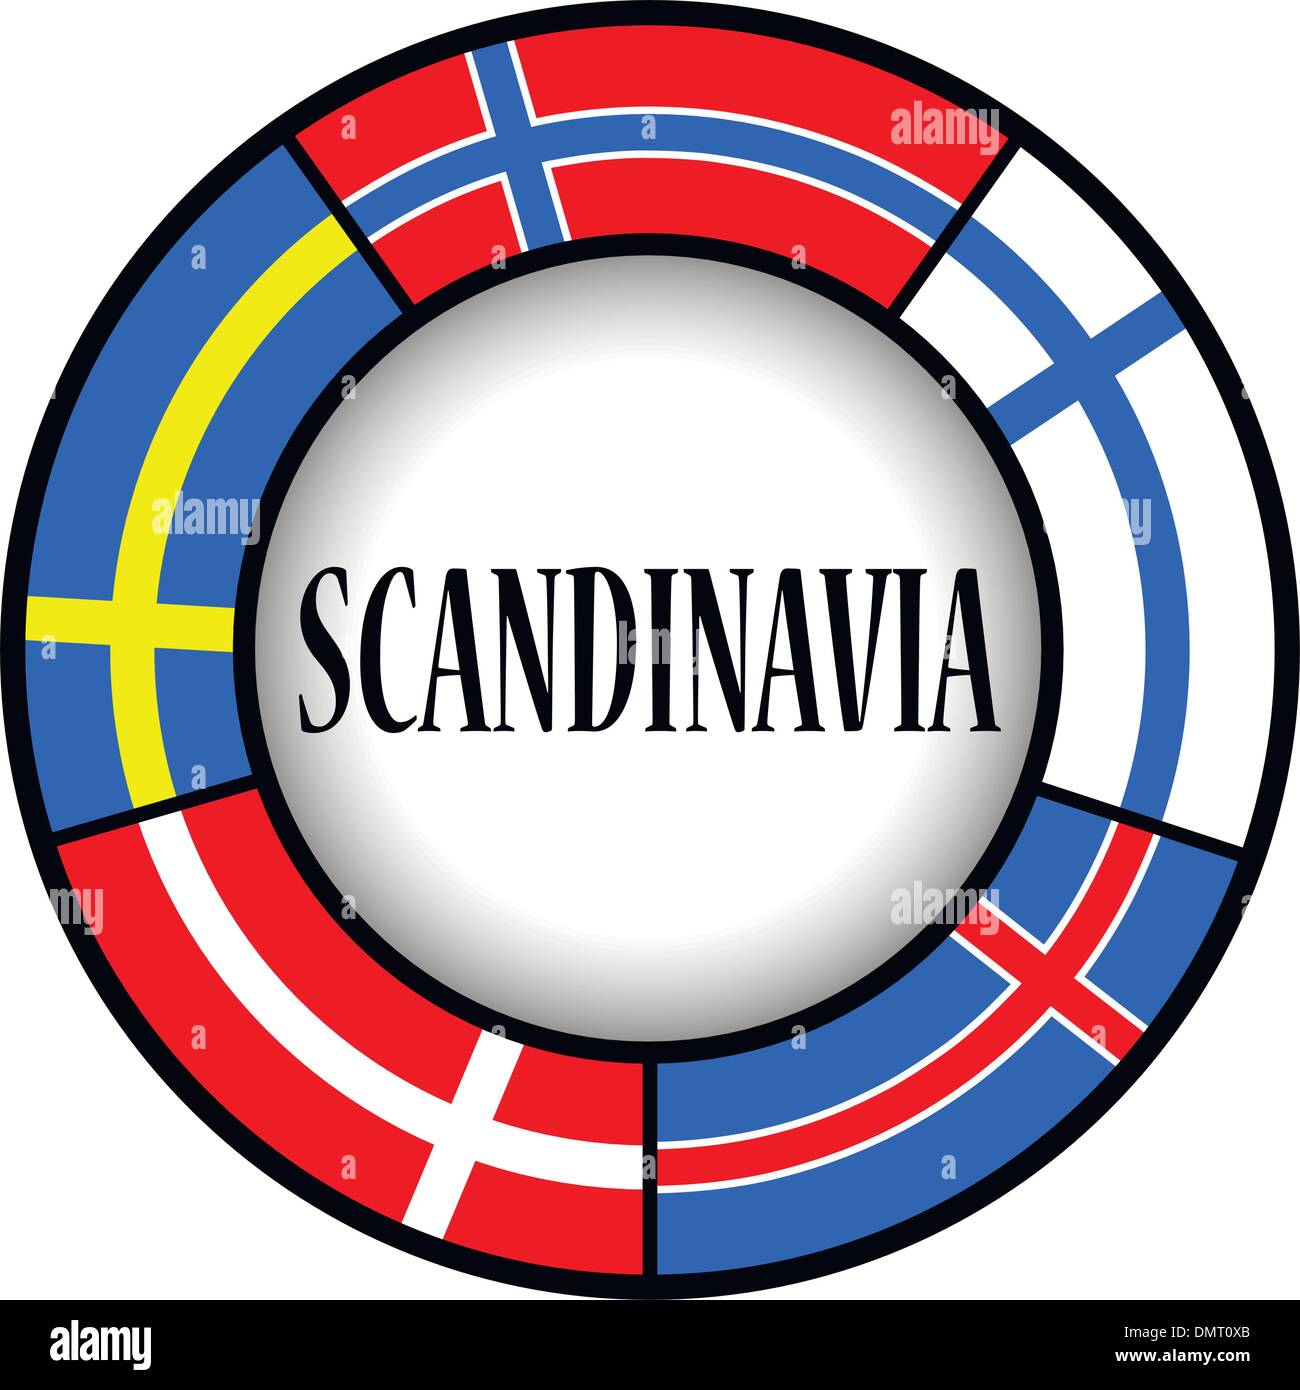 Scandinavian flags in a circle Stock Vector